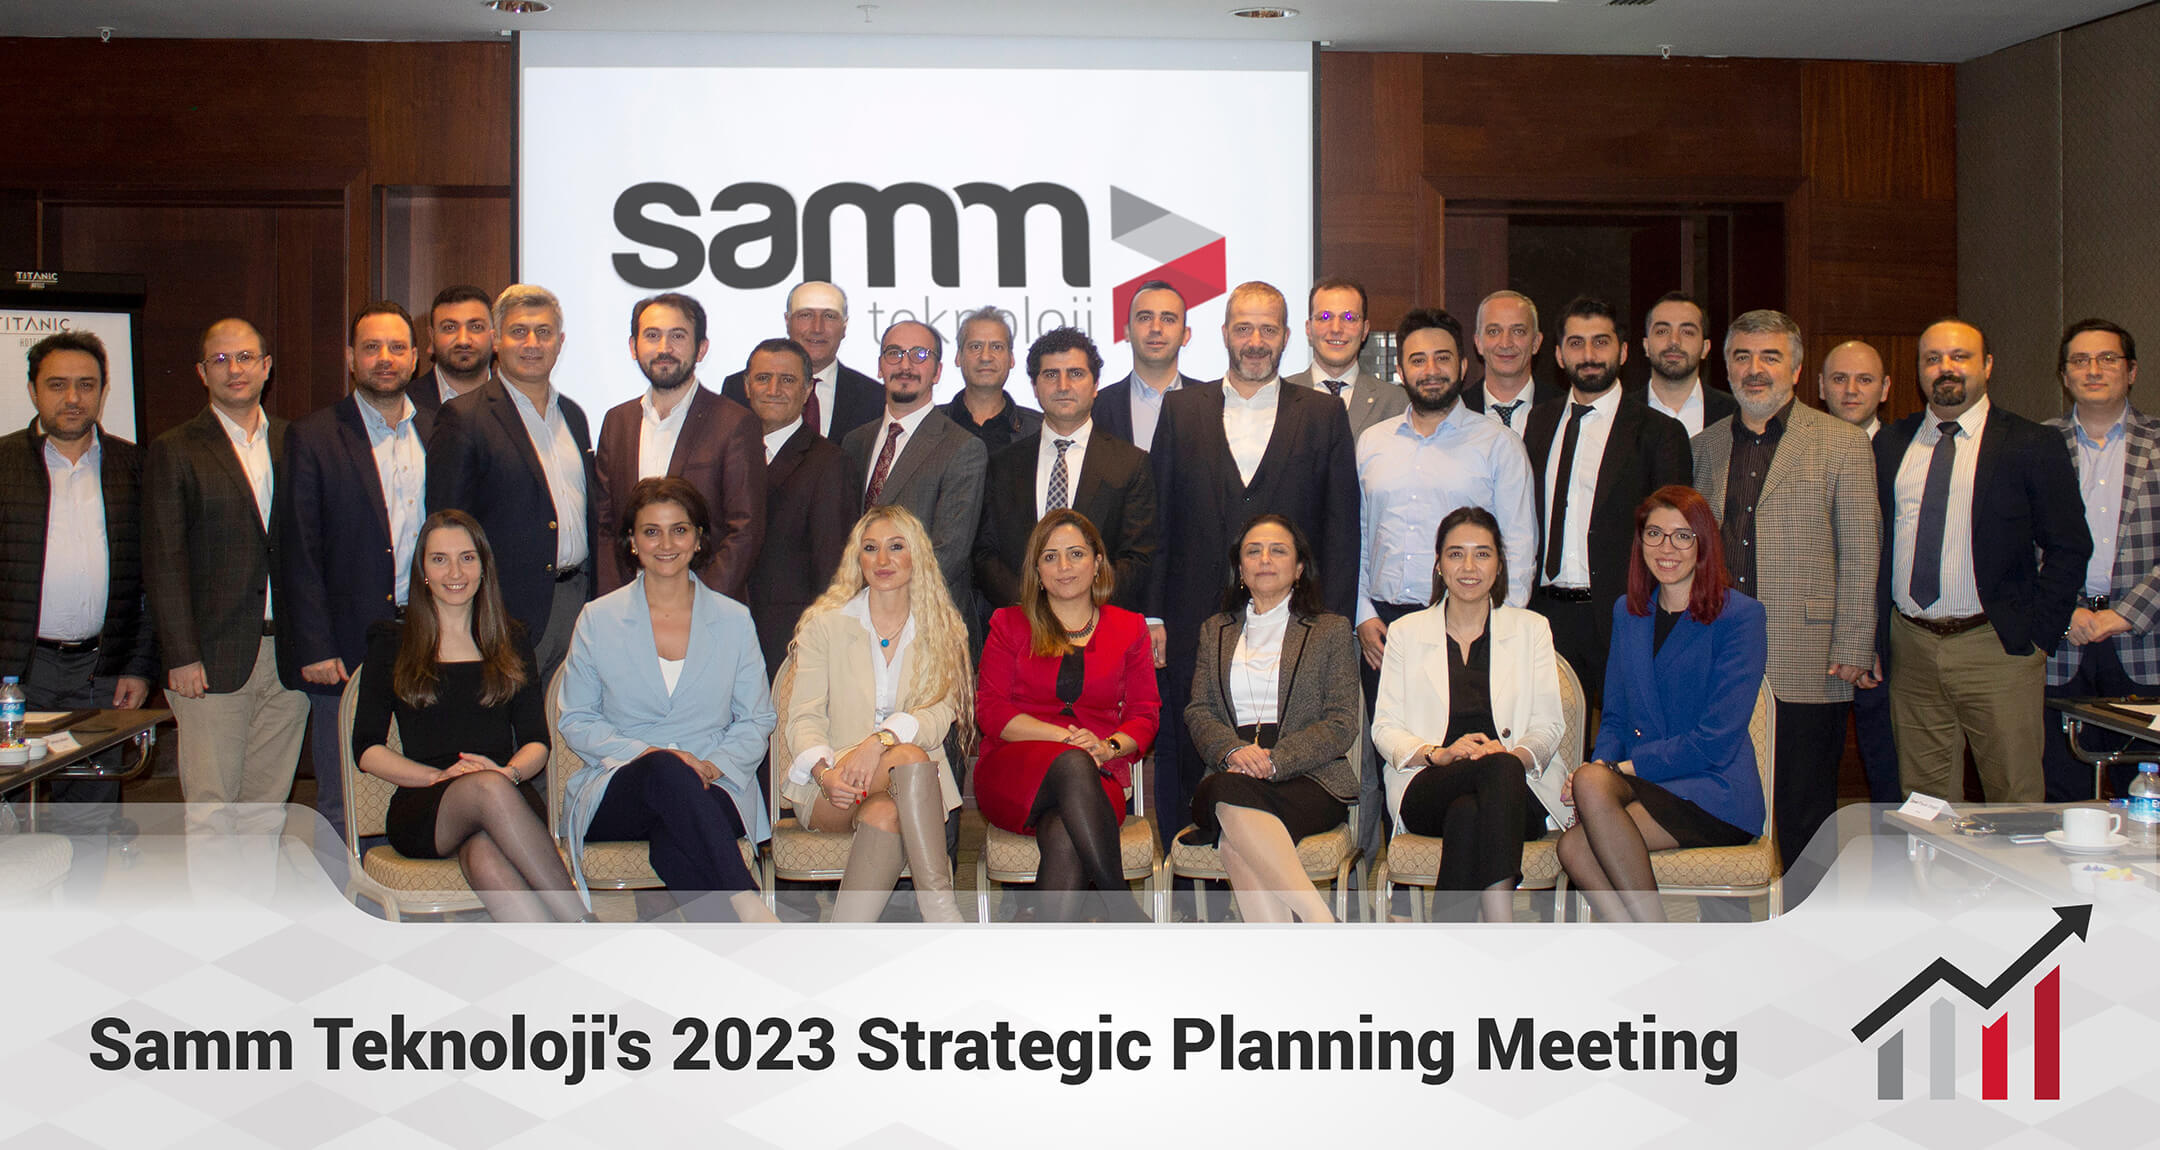 Samm Teknoloji's 2023 Strategic Planning Meeting